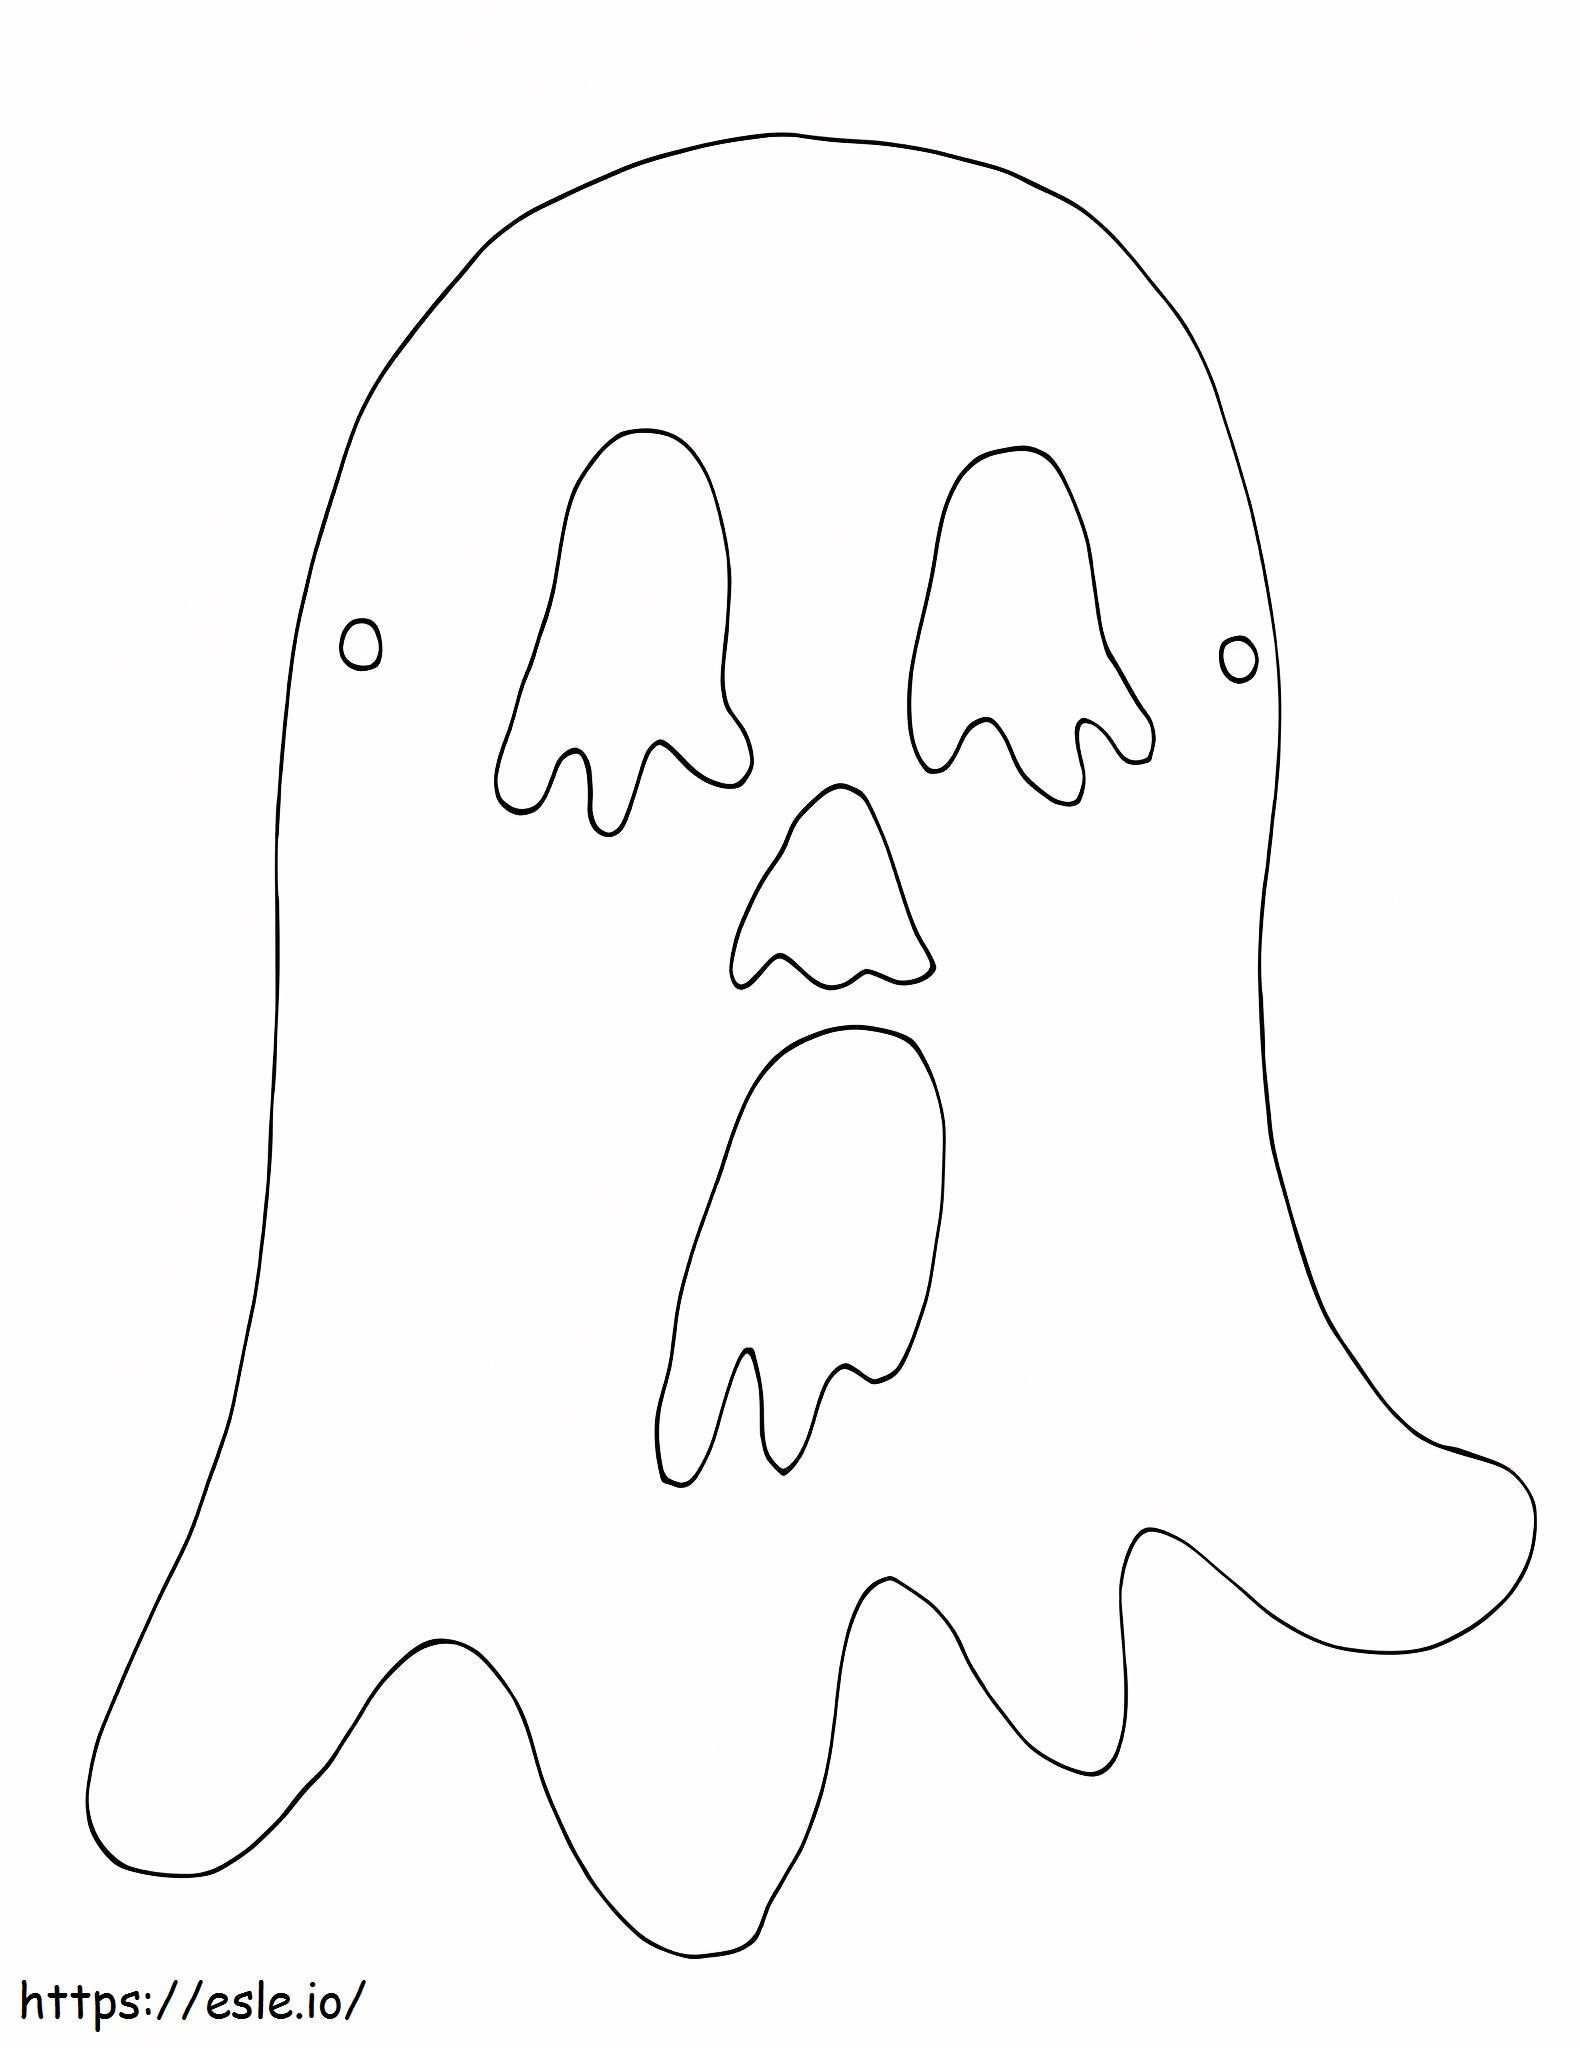 Maschera spaventosa del fantasma da colorare